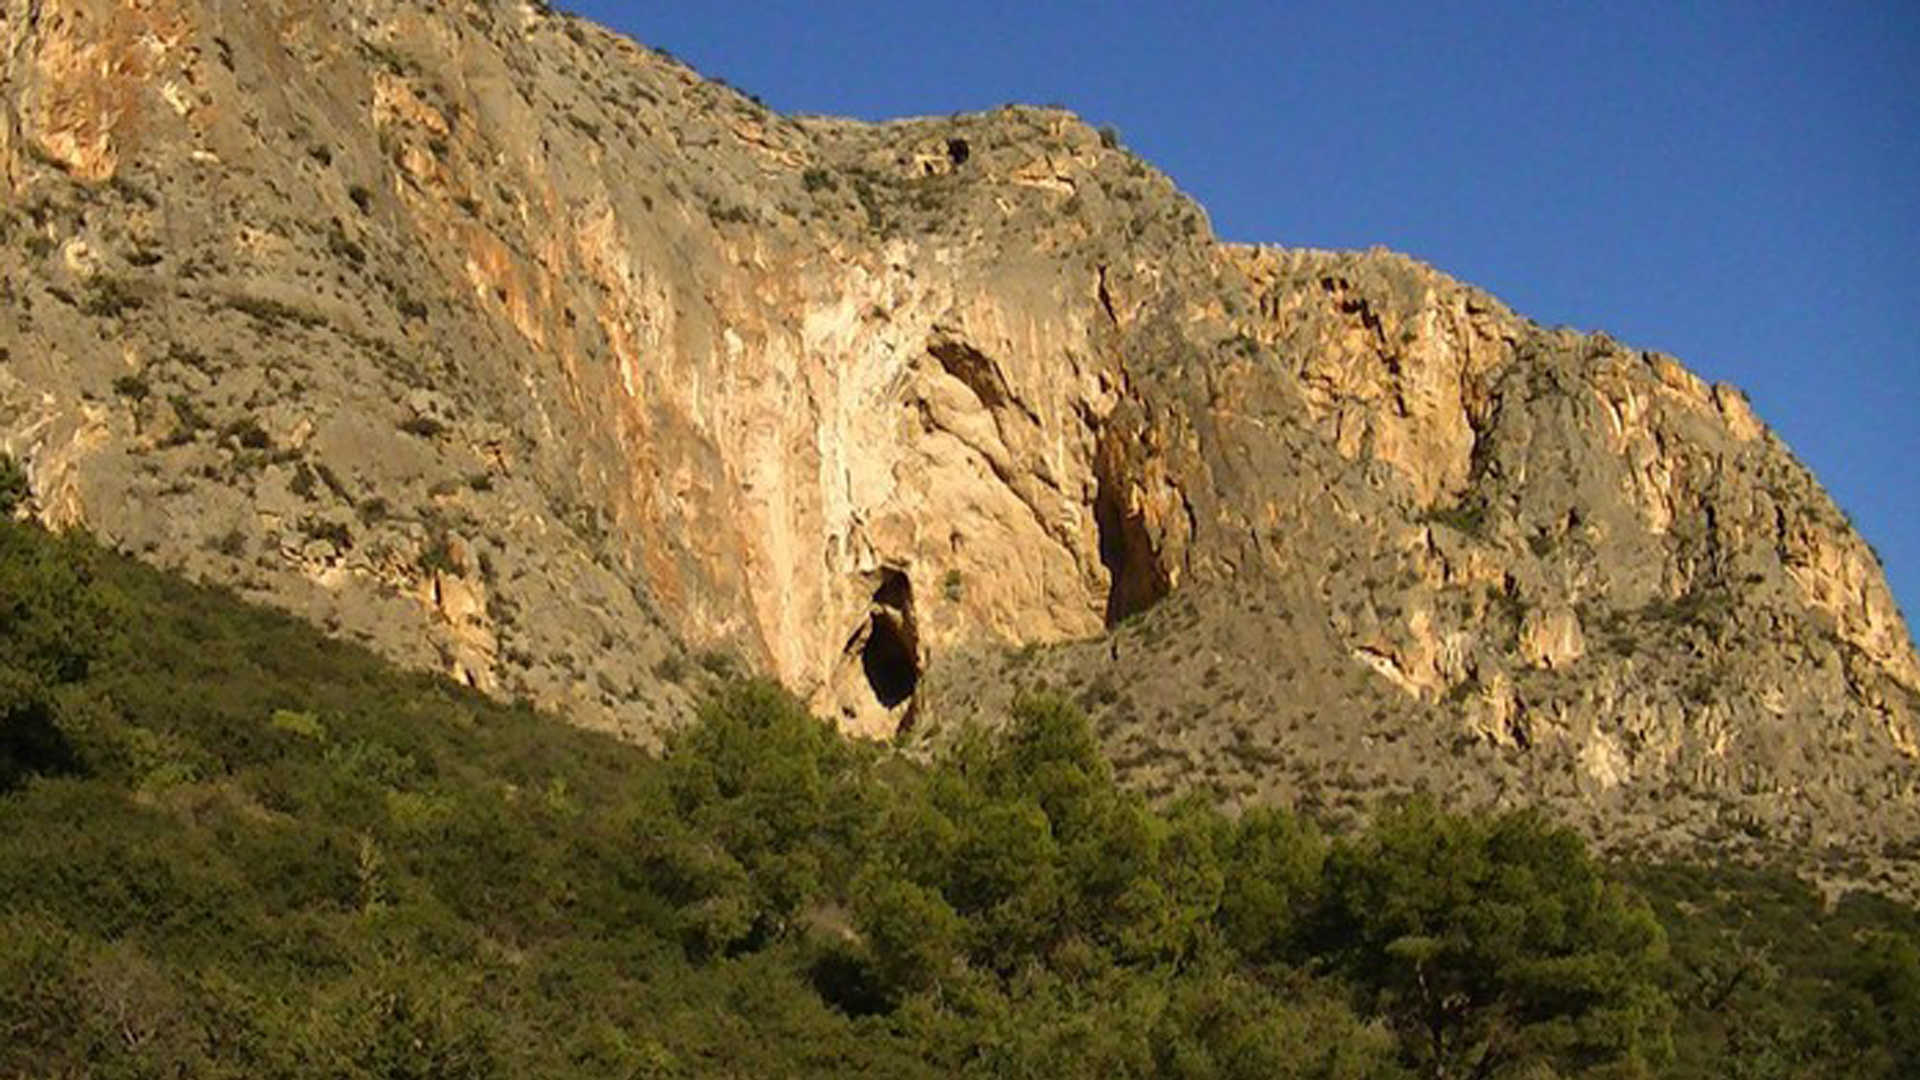 La Cueva Ahumada recreation area